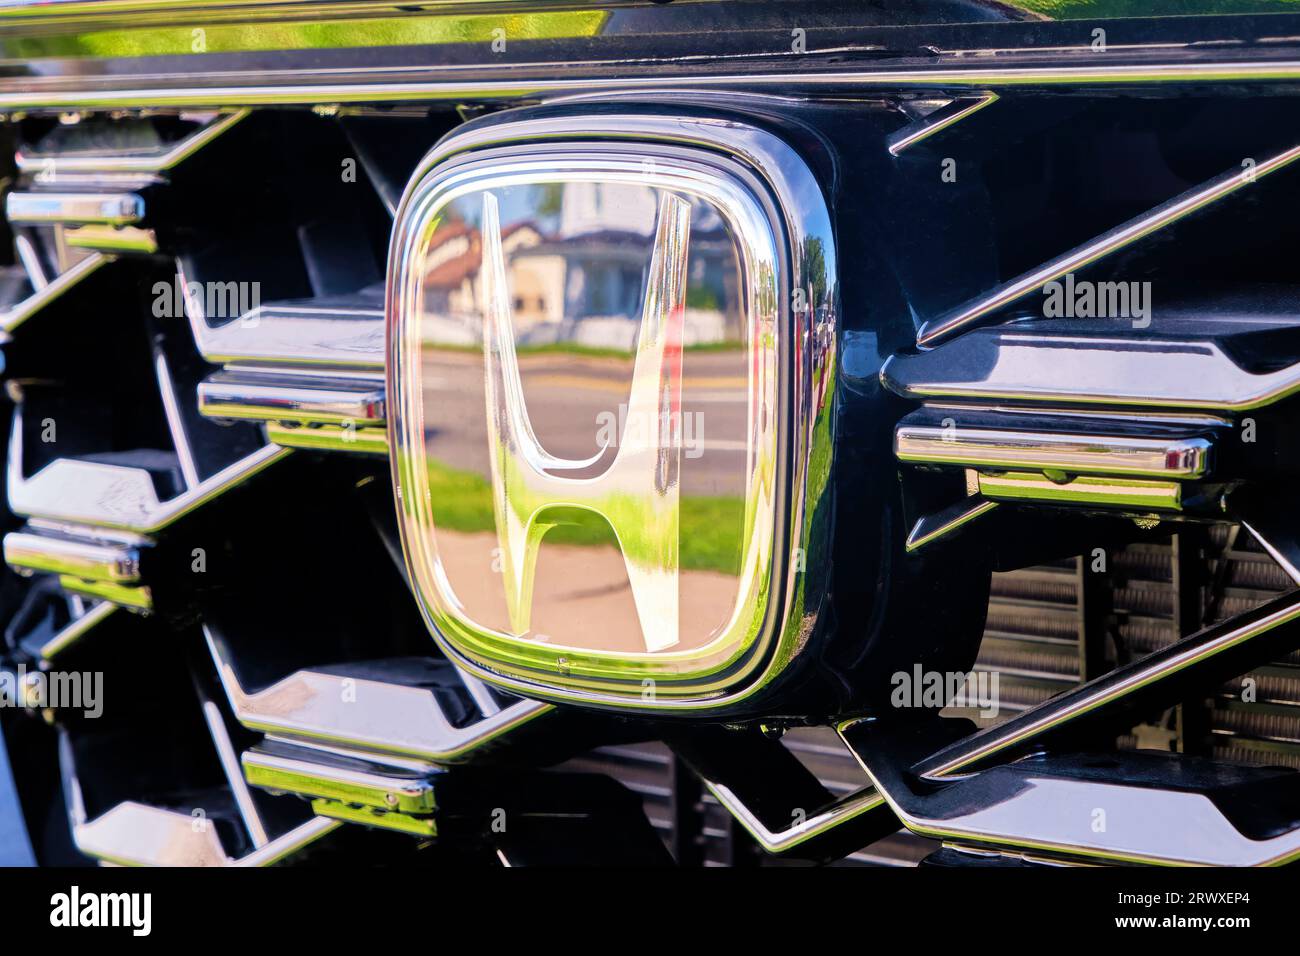 L'emblème emblématique de Honda a monté la calandre d'un modèle moderne photographié en gros plan. Banque D'Images